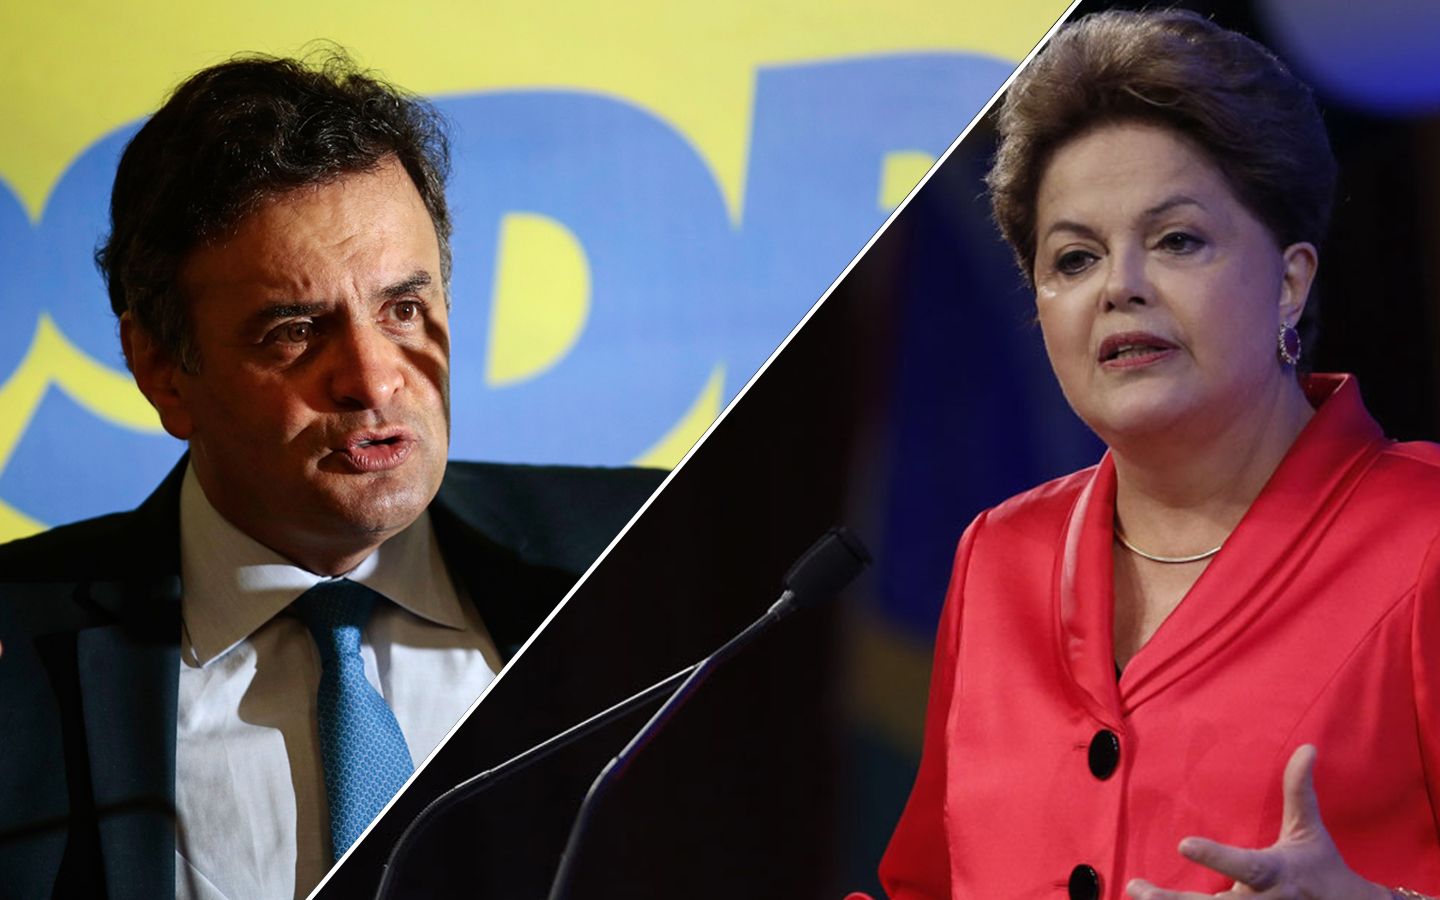 La campaña contra Dilma está liderada por el líder del PSDB, Aécio Neves, quien no afronta la derrota que protagonizó en las elecciones presidenciales de 2014.